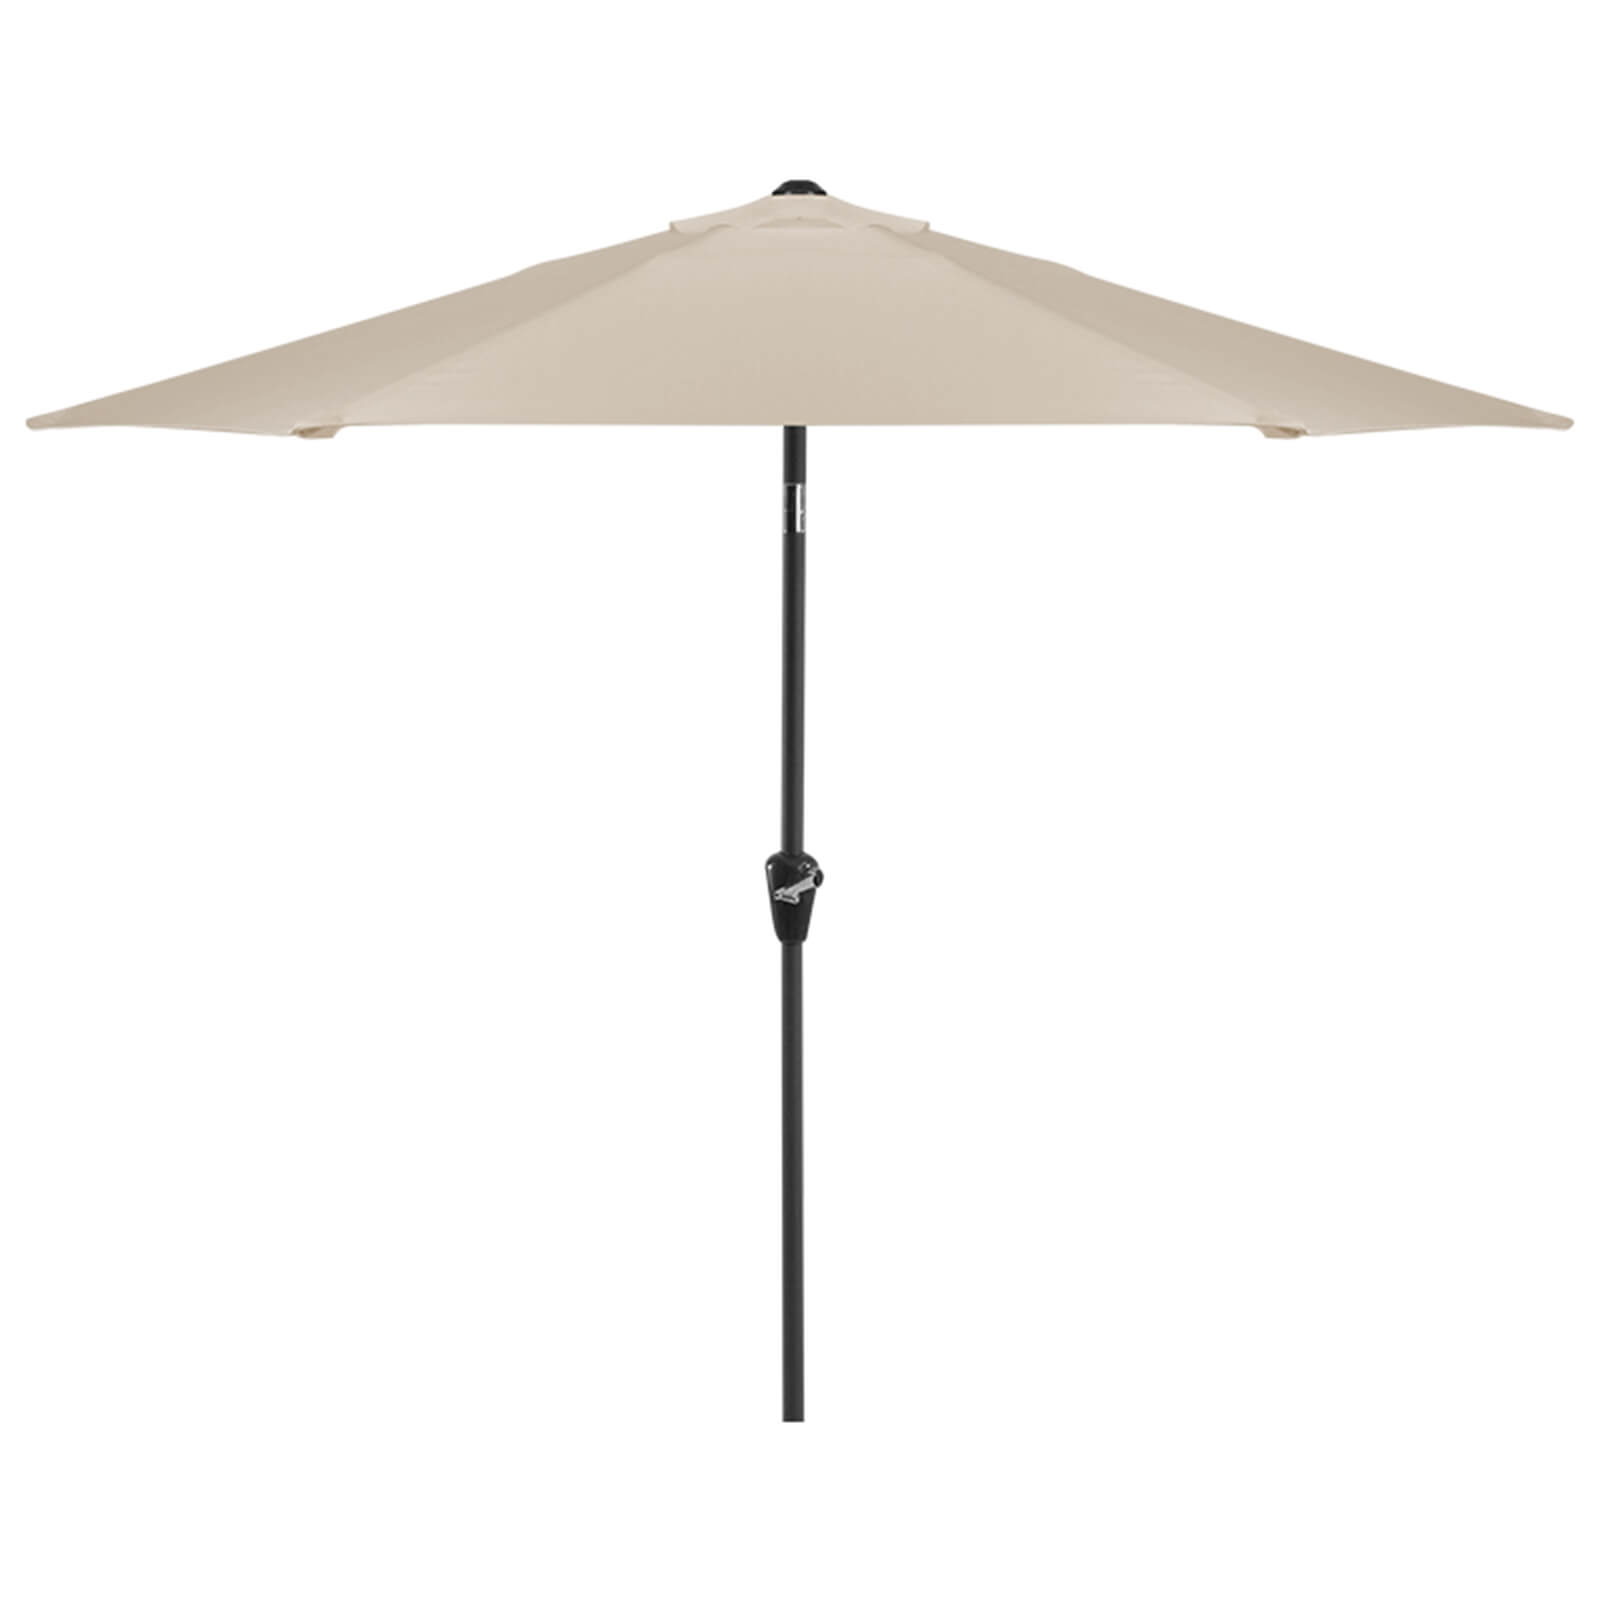 Aluminium Umbrella Parasol - 2.4m - Beige